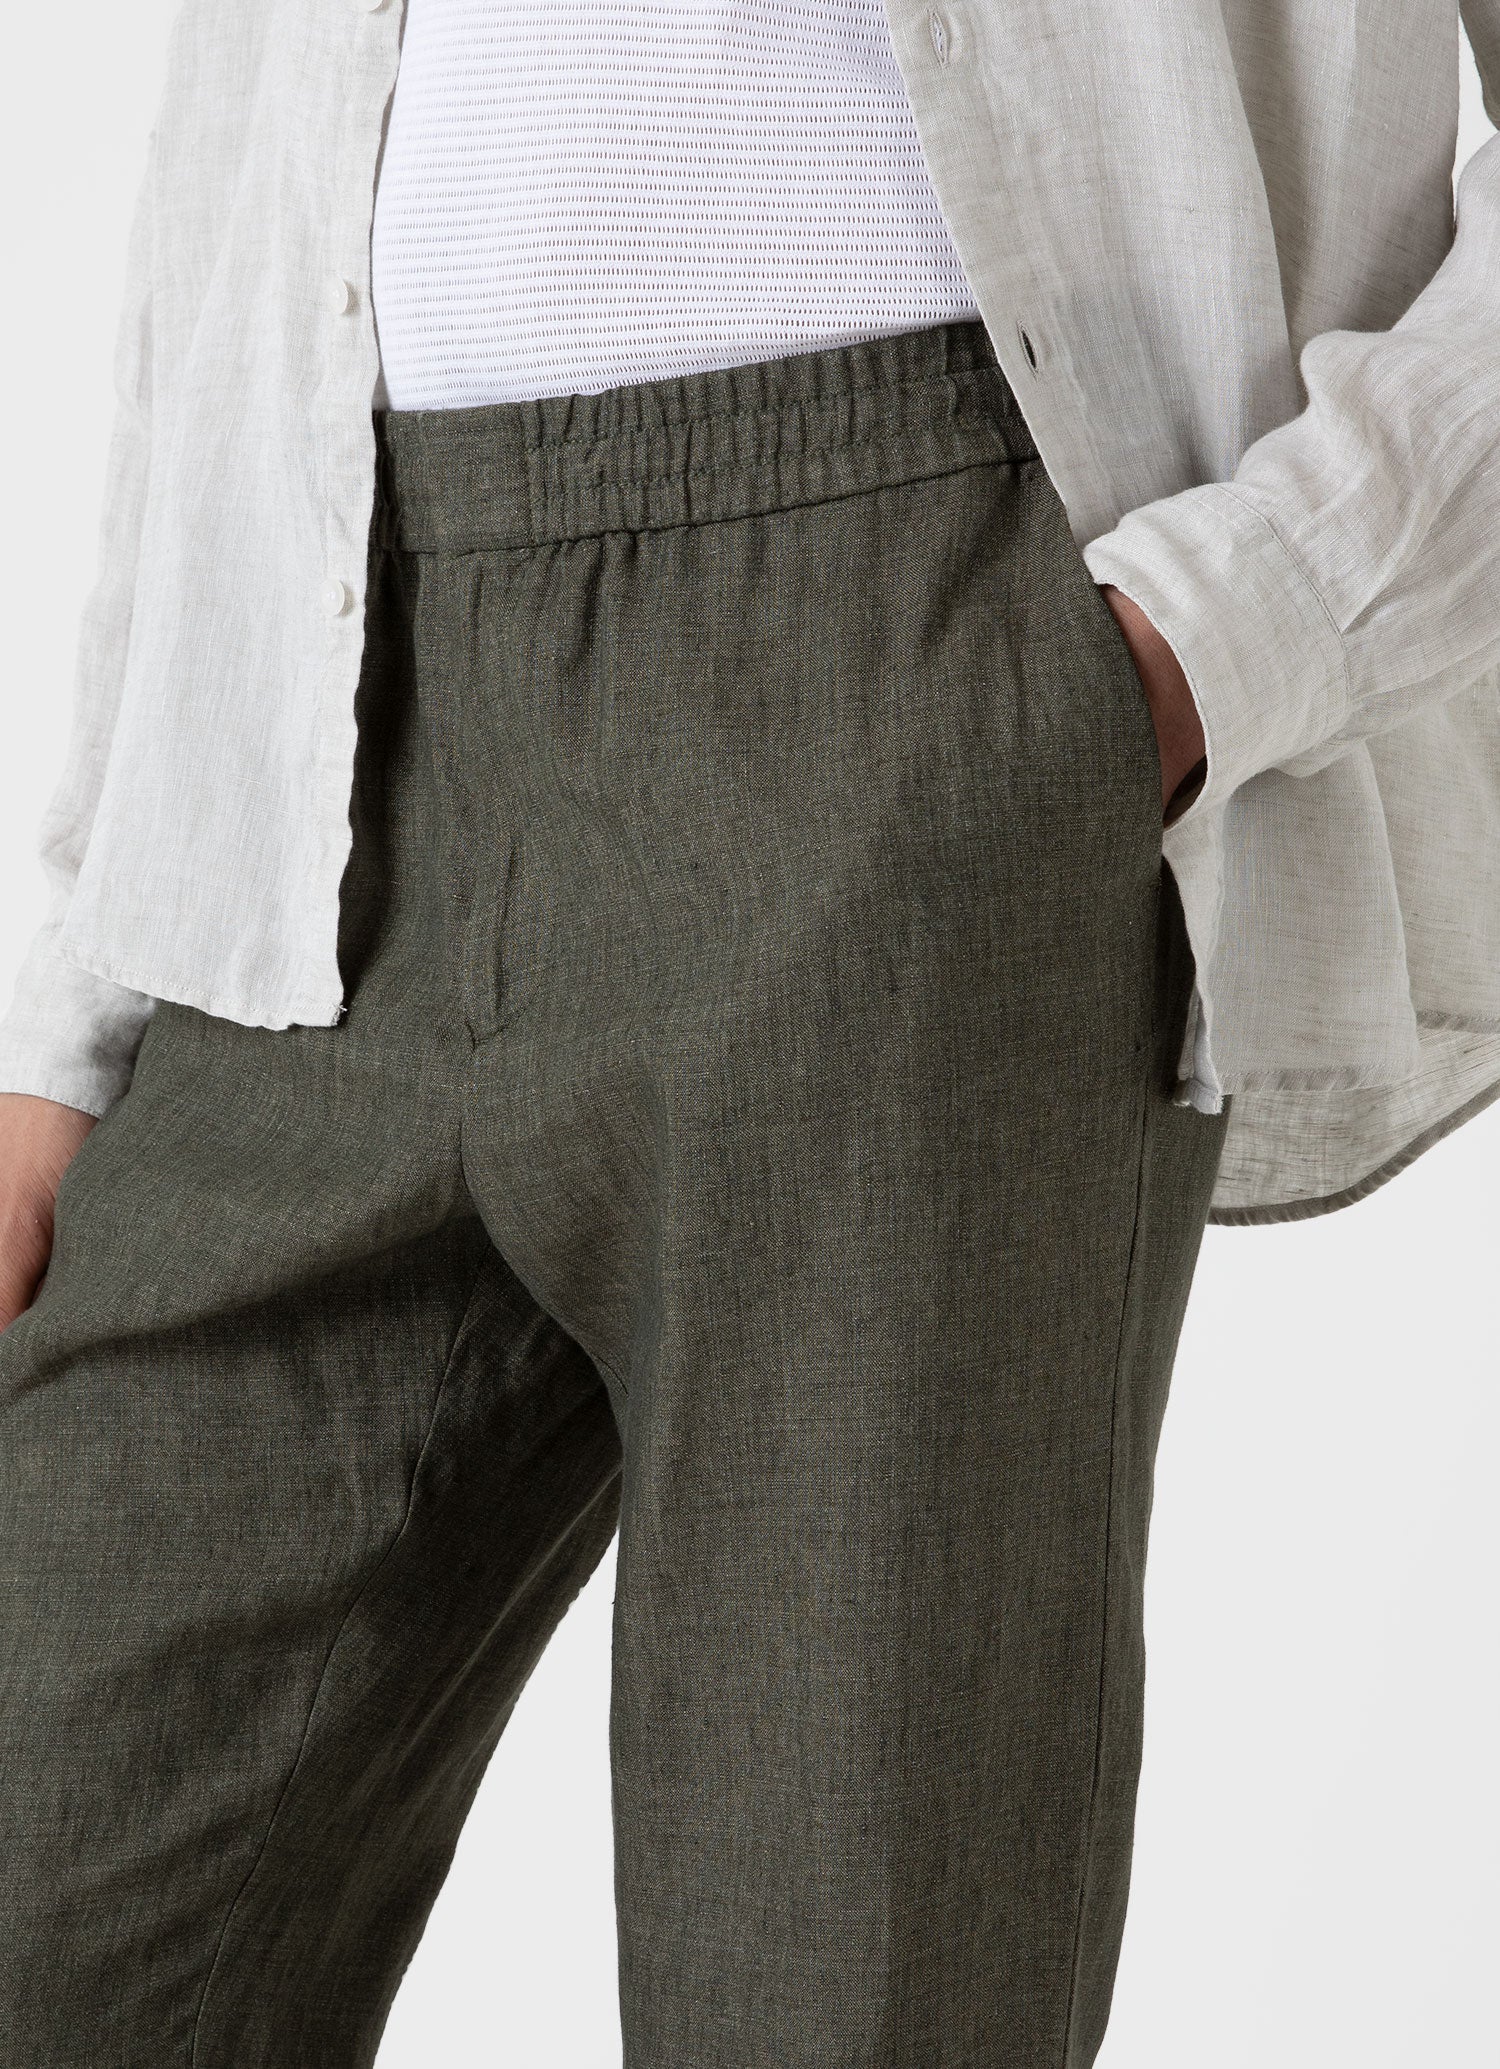 Men's Linen Drawstring Trouser in Light Khaki